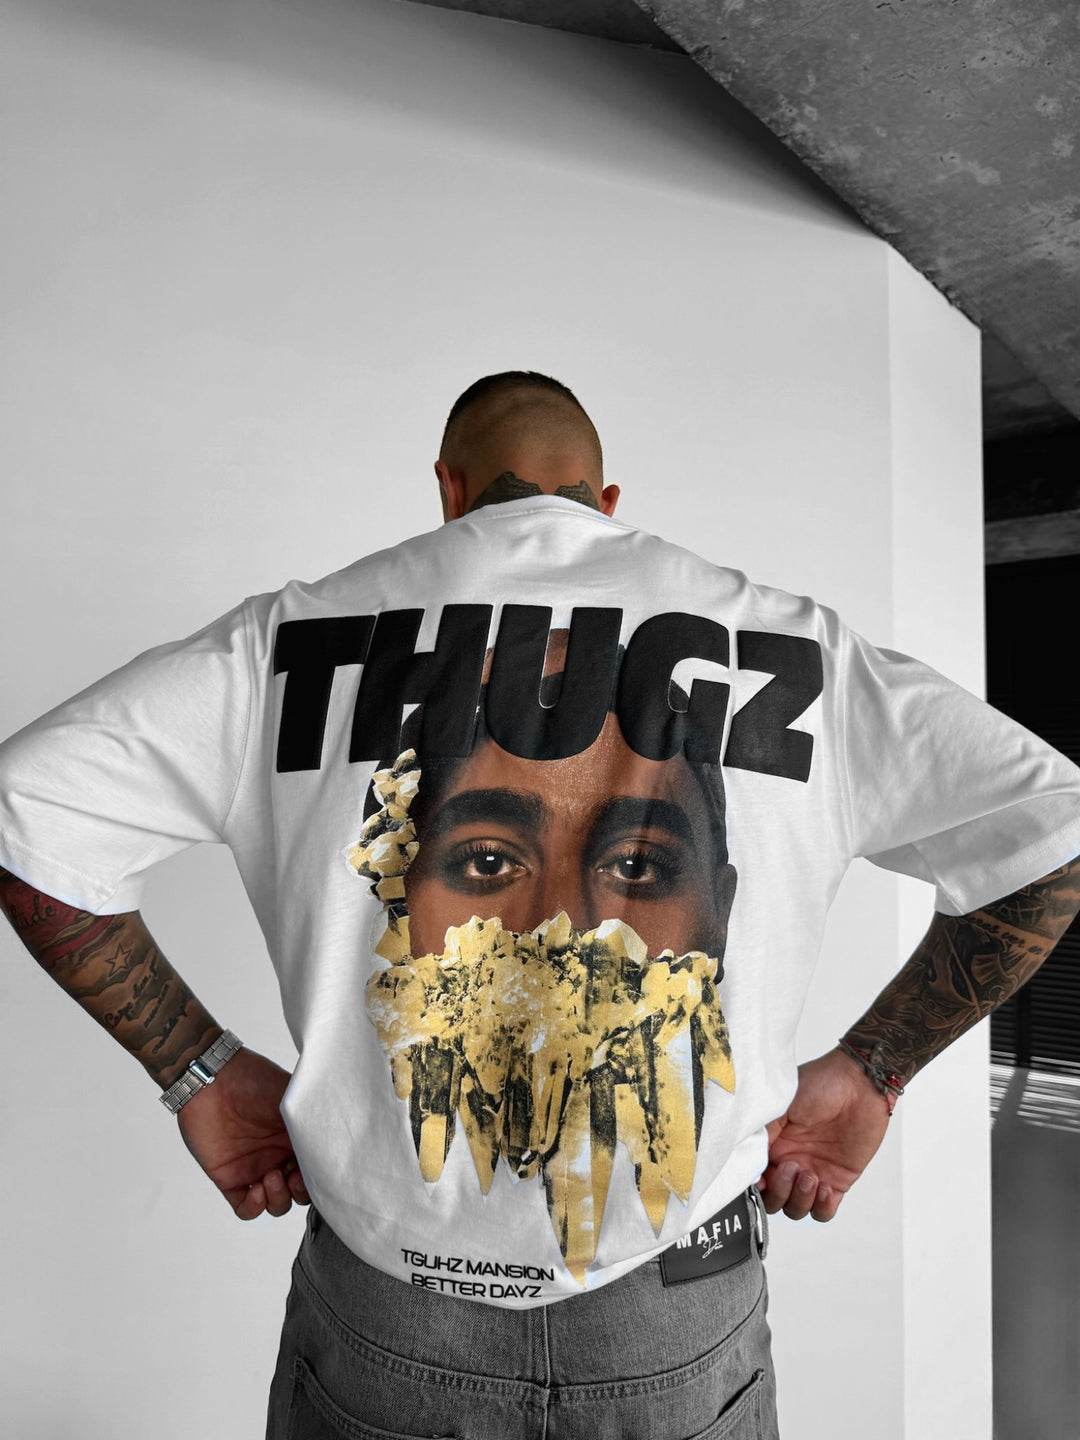 Oversize 'Thugz' T-shirt - Ecru